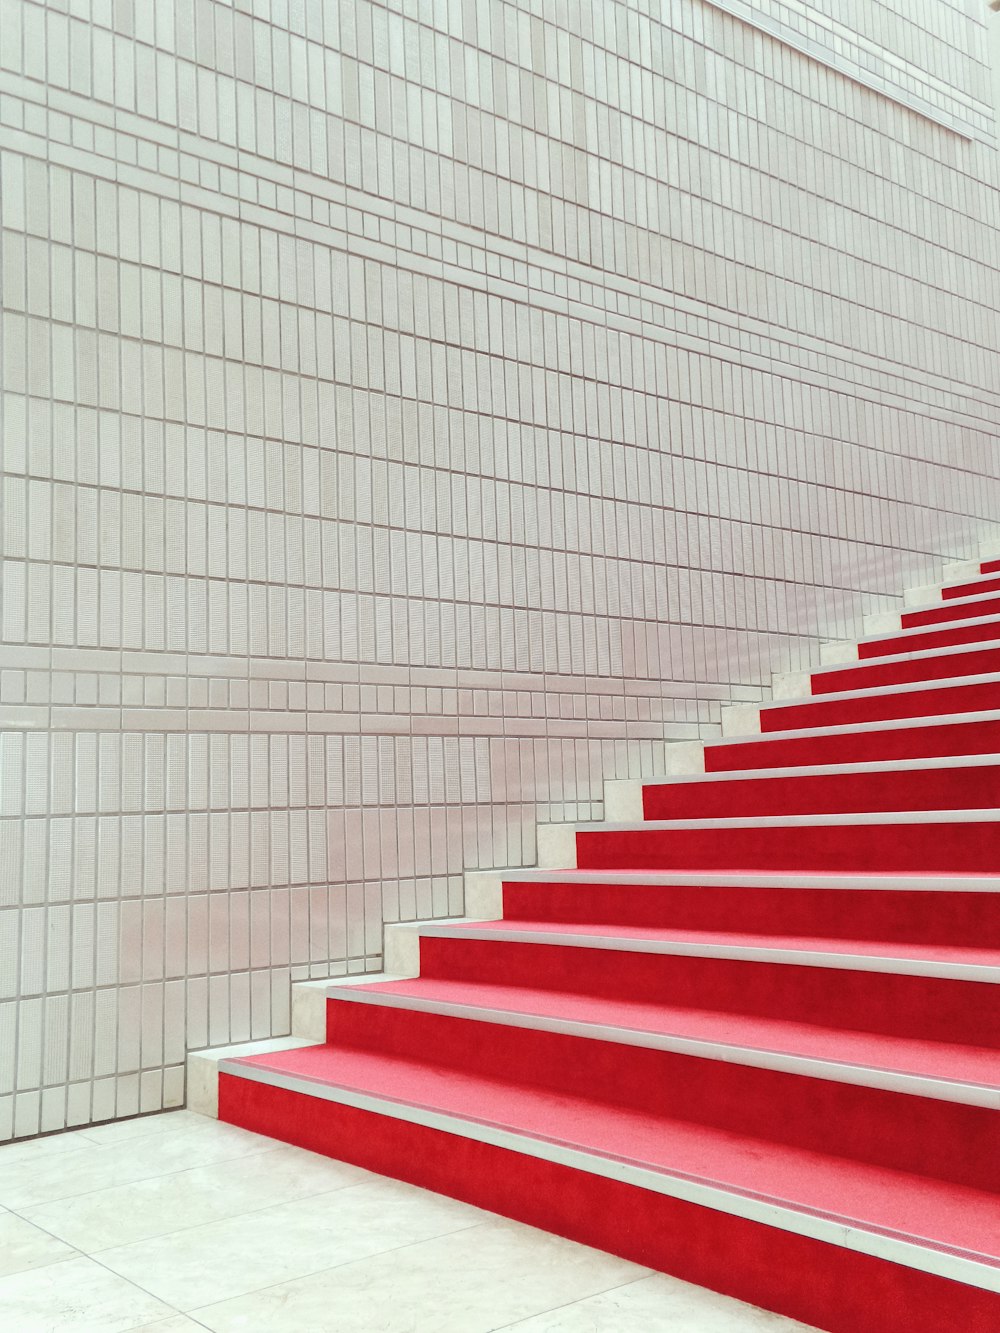 Escaleras rojas y blancas